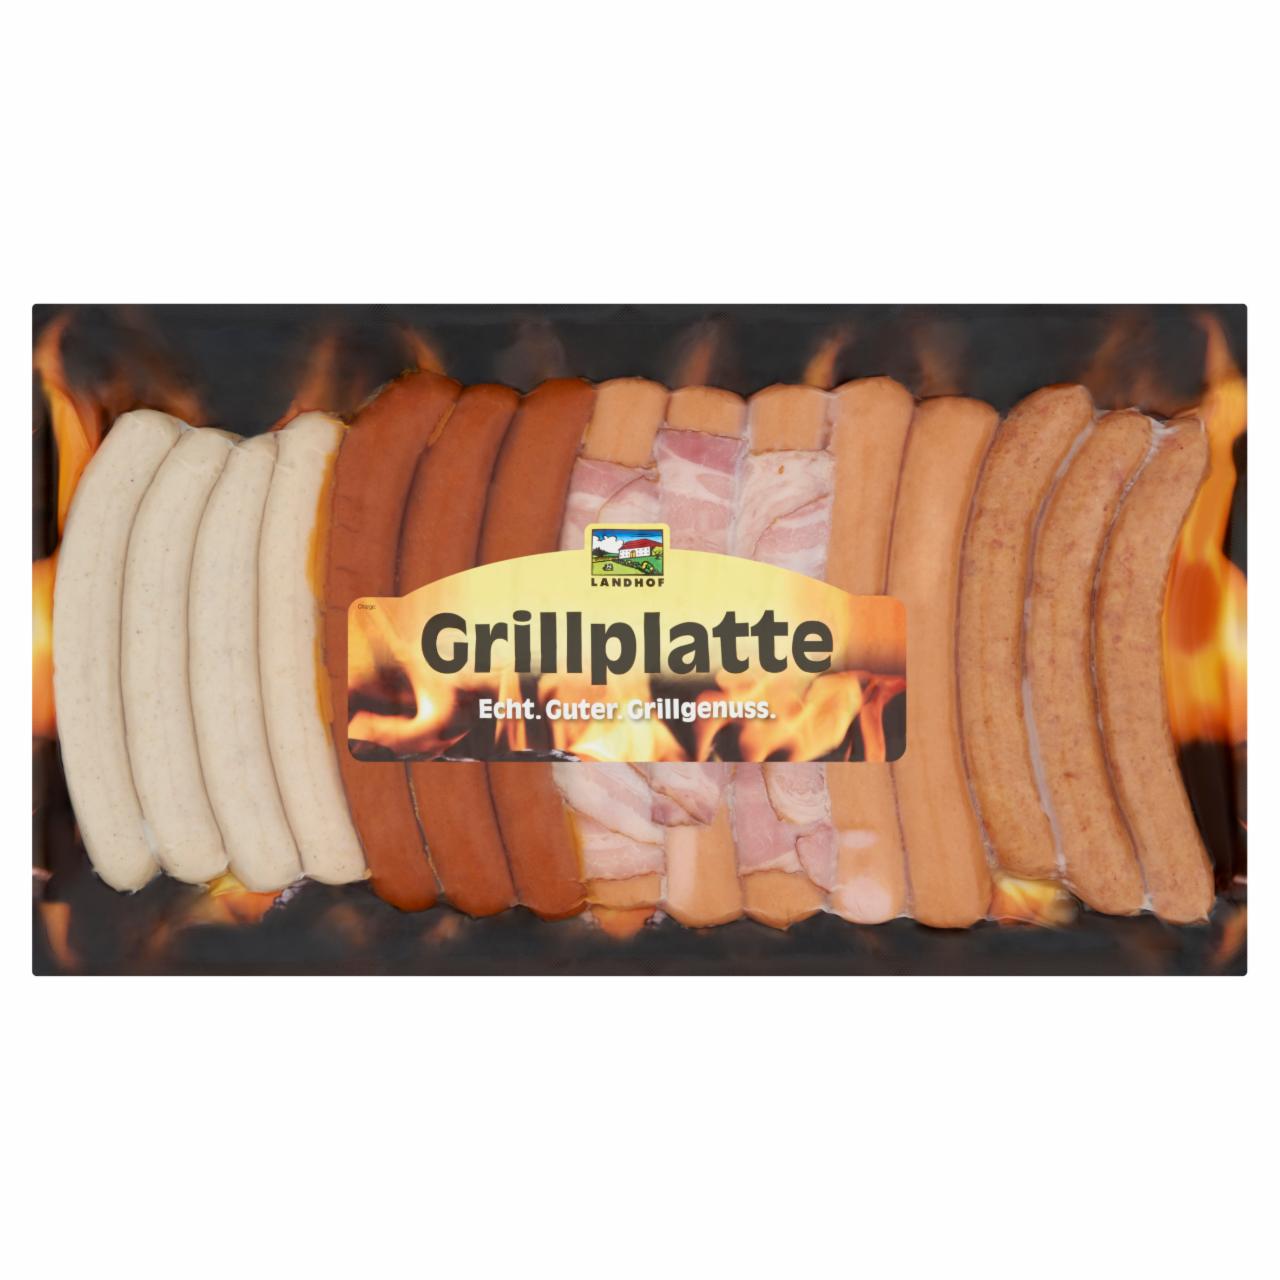 Képek - Landhof Grillplatte vegyes húskészítmény sertés és marhahúsból 910 g